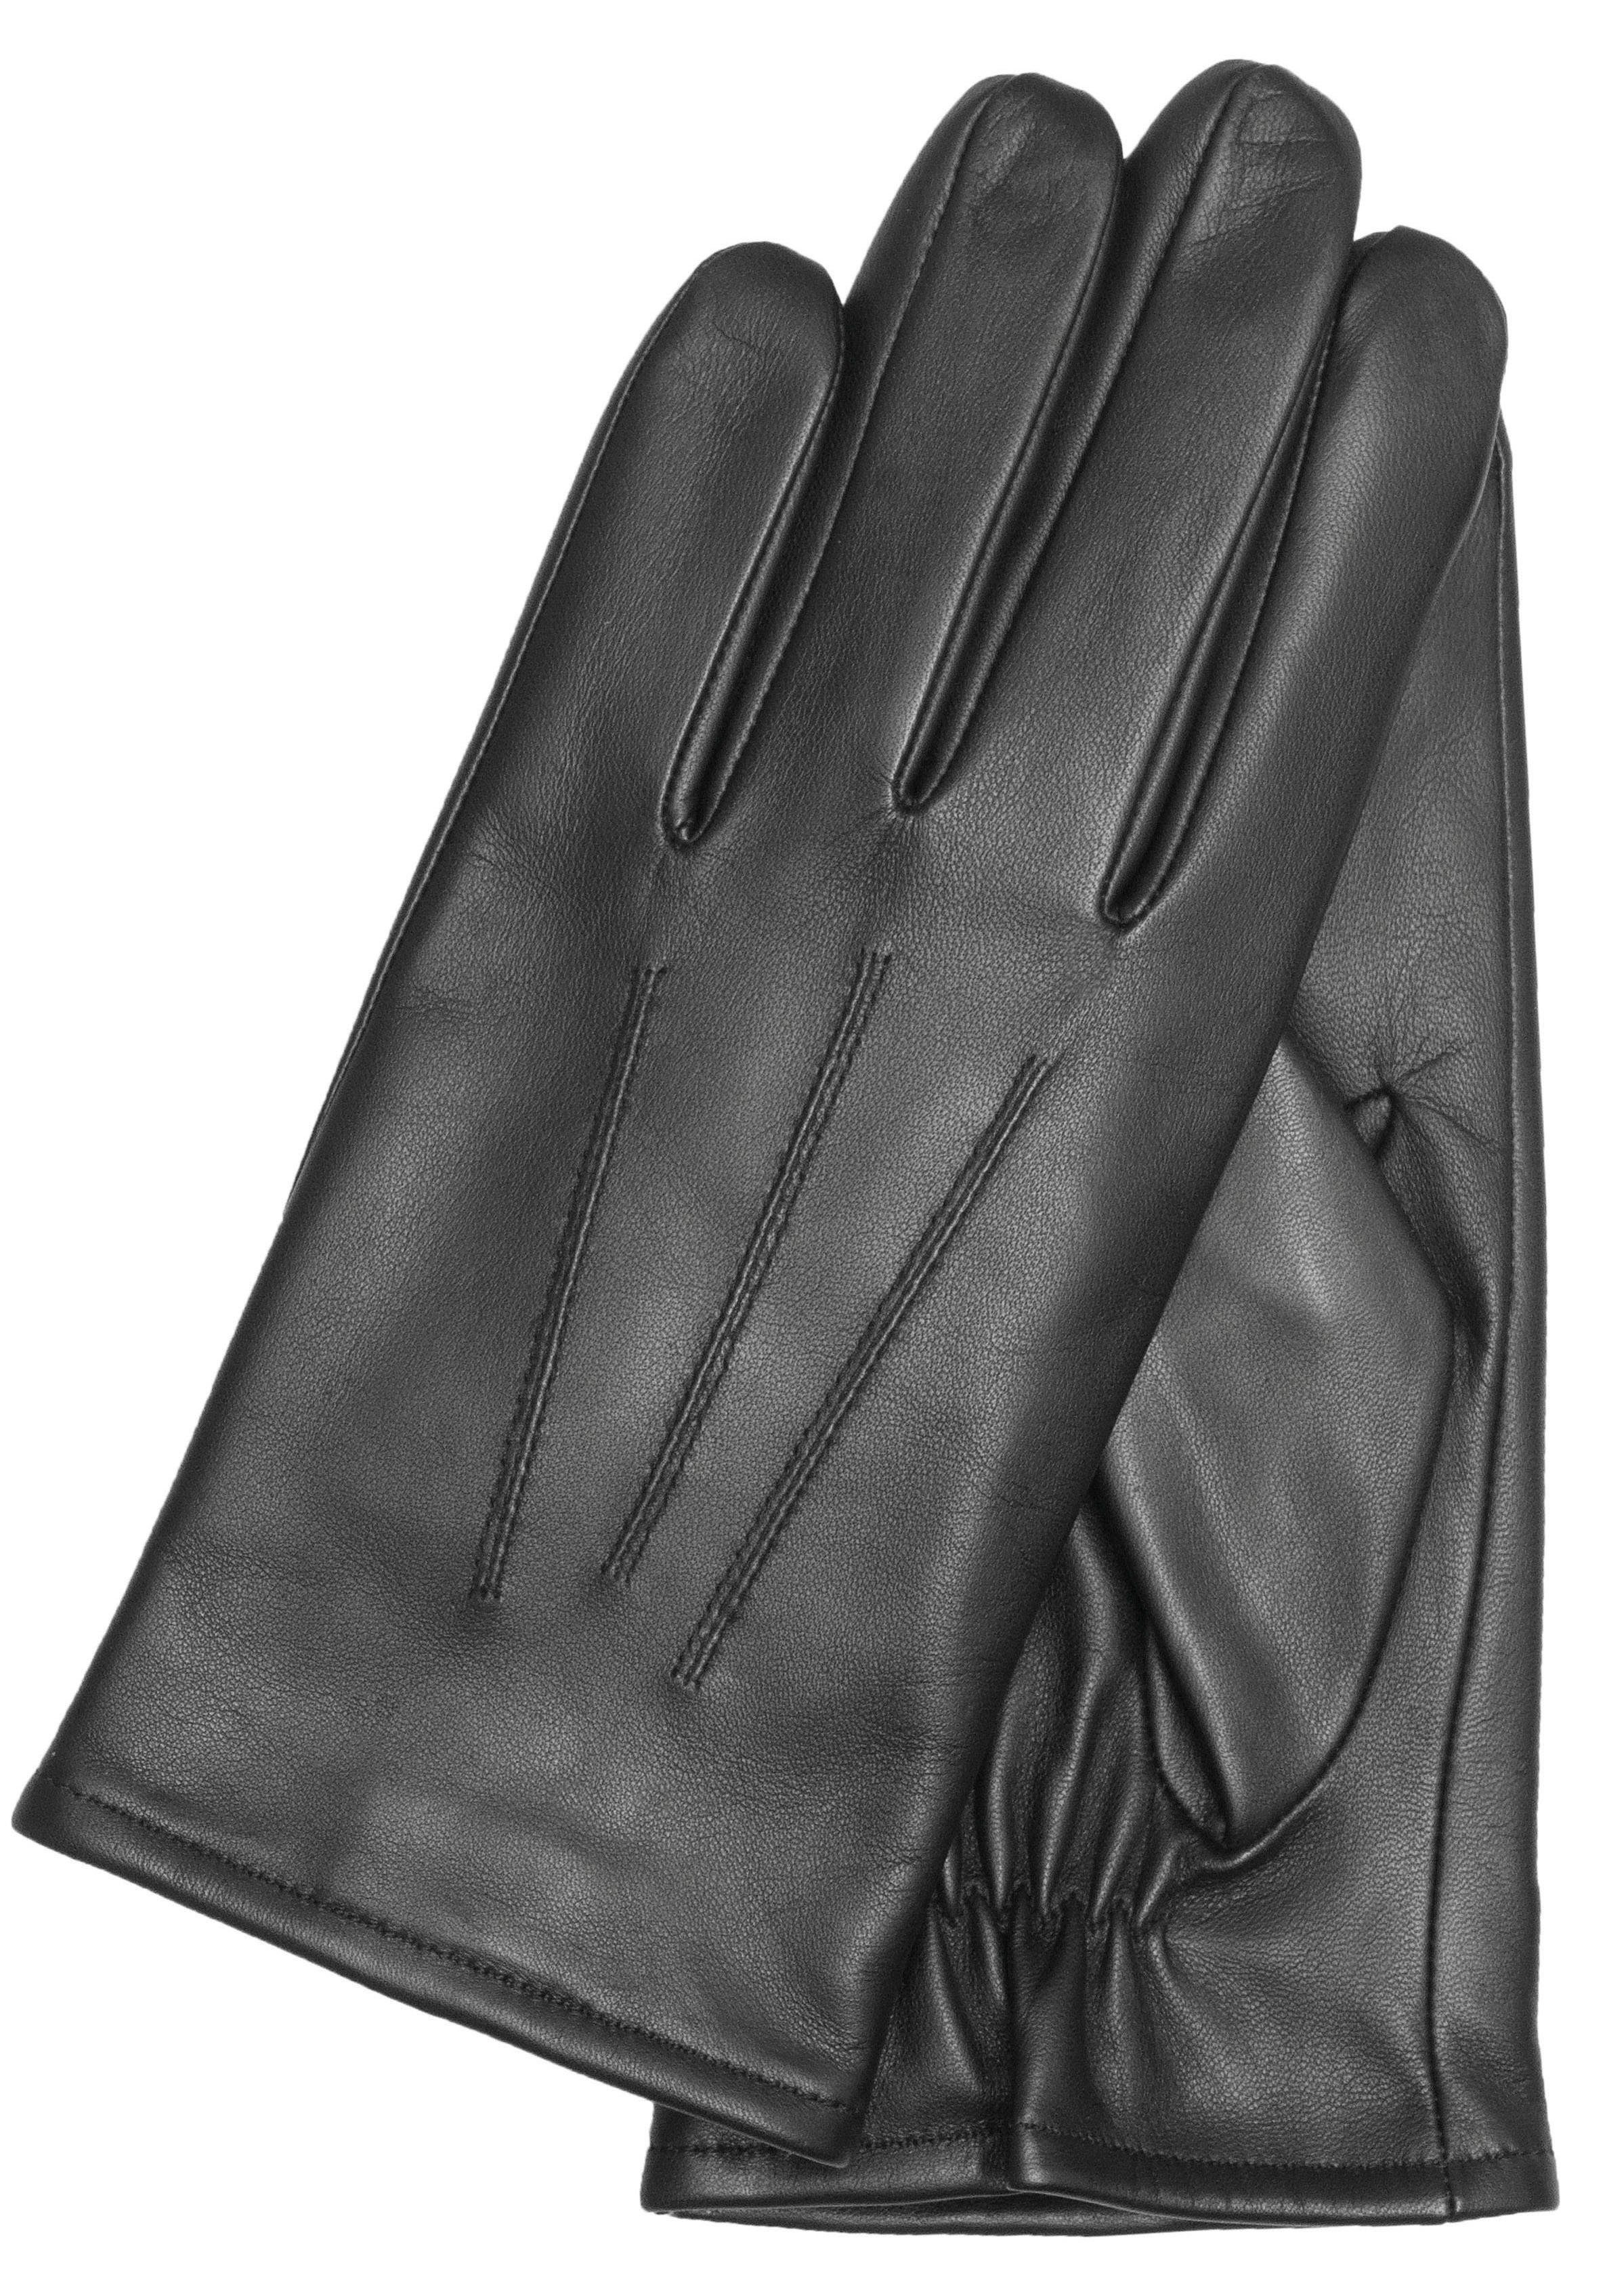 KESSLER Handschuhe online kaufen | OTTO